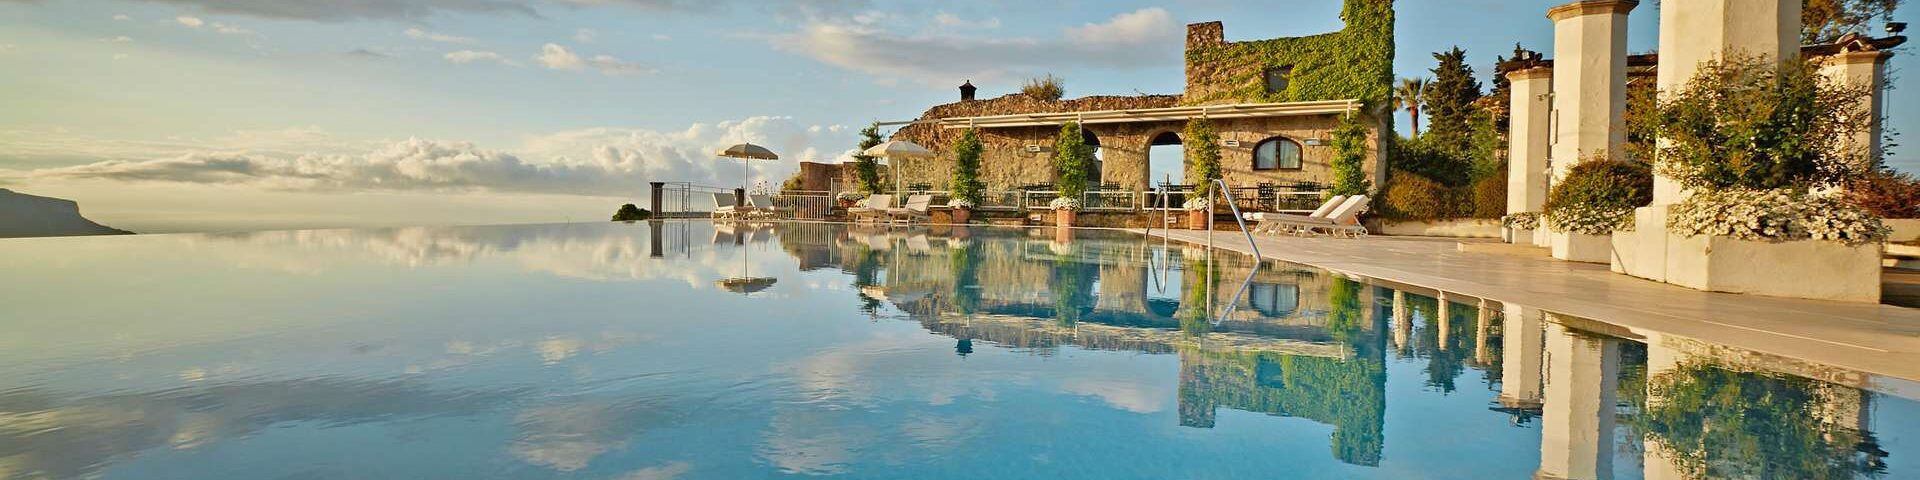 hotel terbaik di italia Belmond Caruso